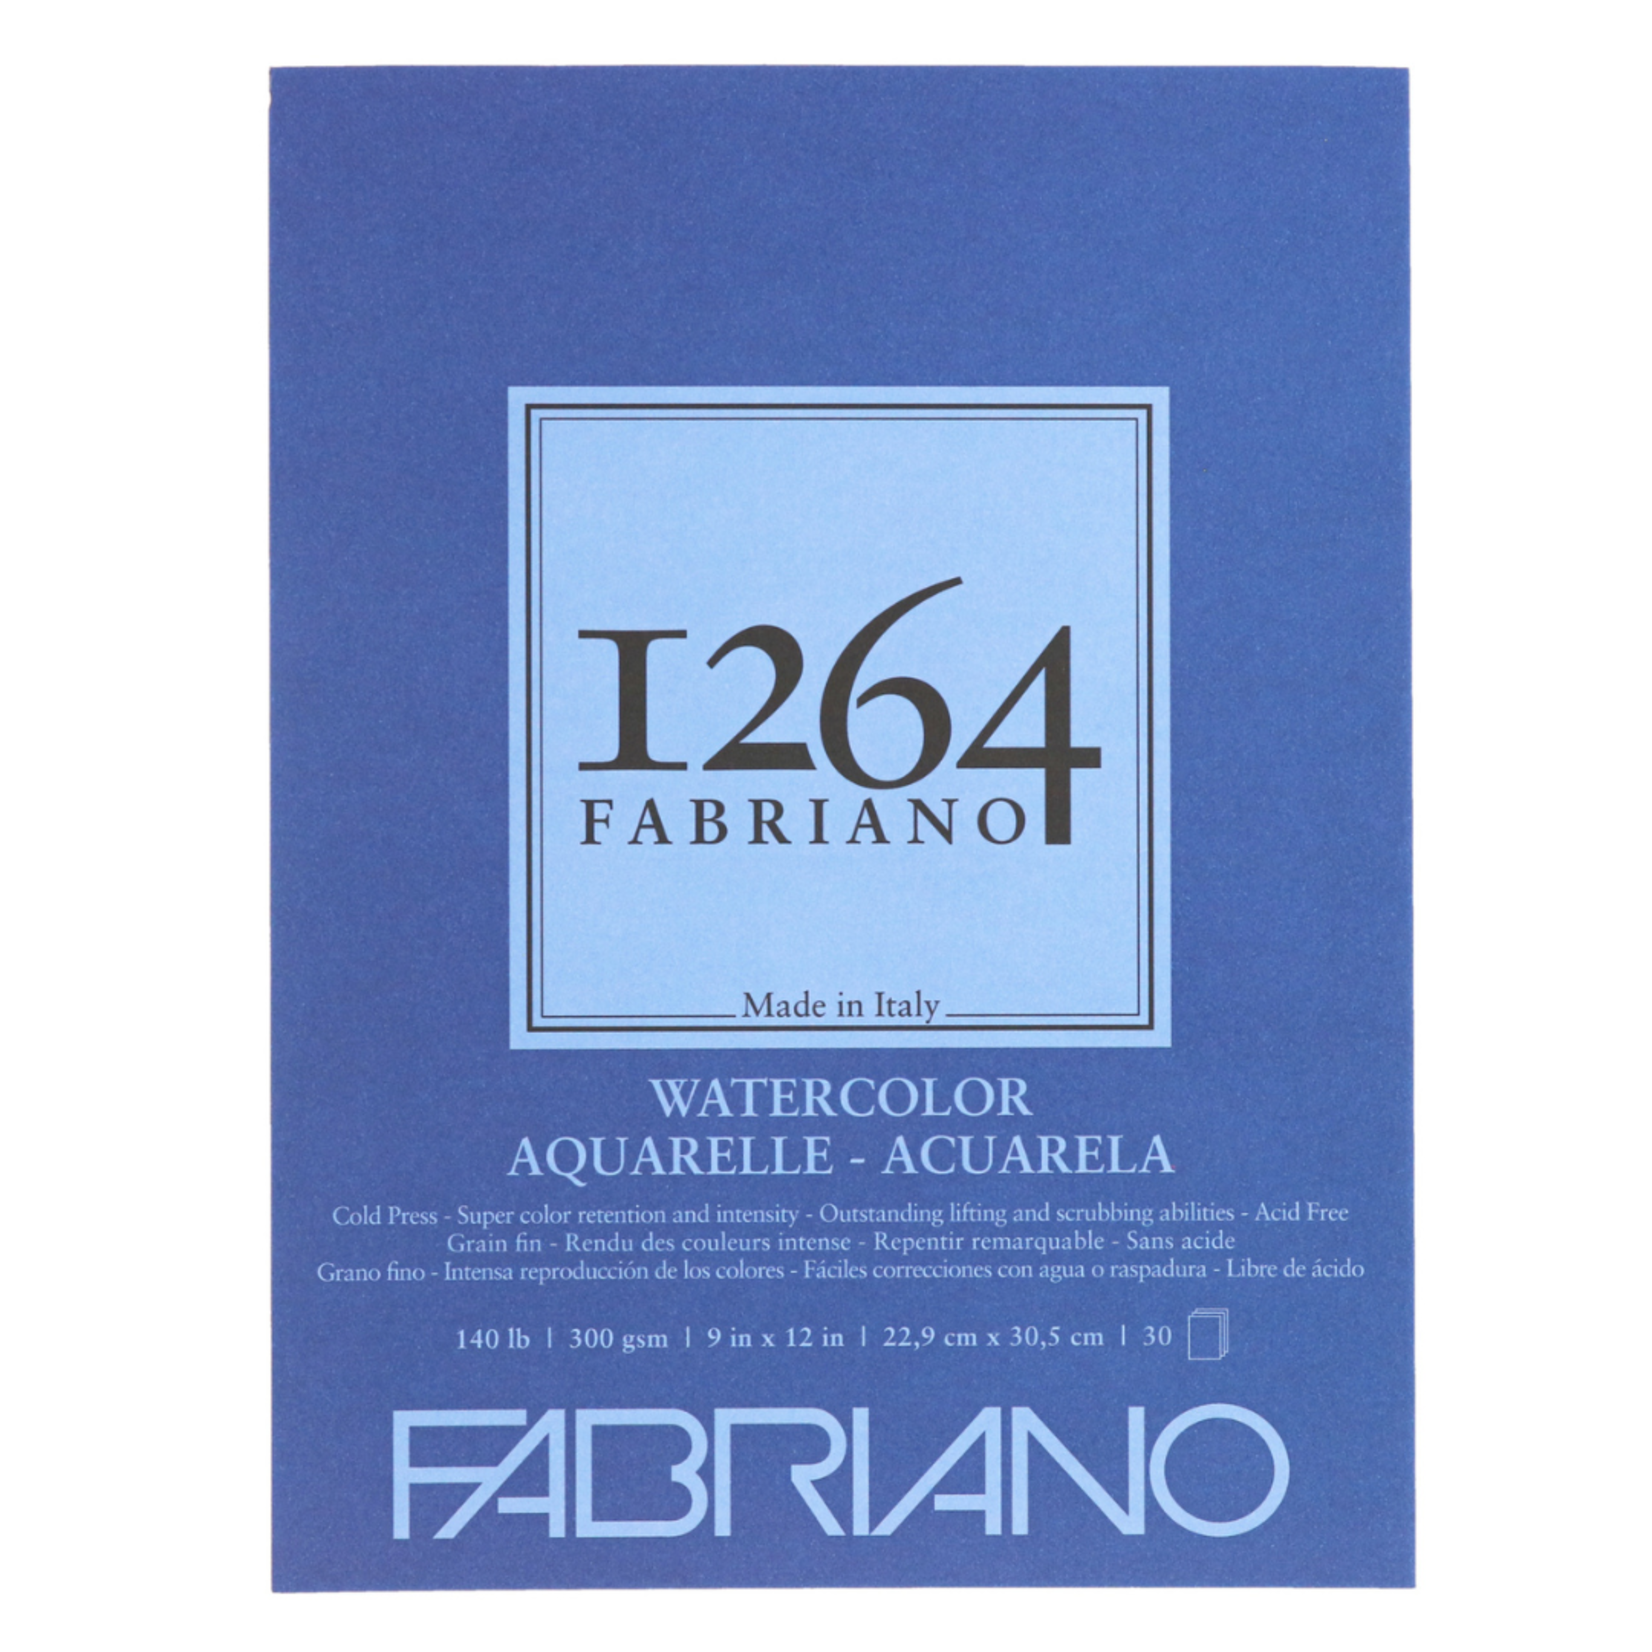 FABRIANO 1264 WATERCOLOUR 140LB 9X12 30/SH